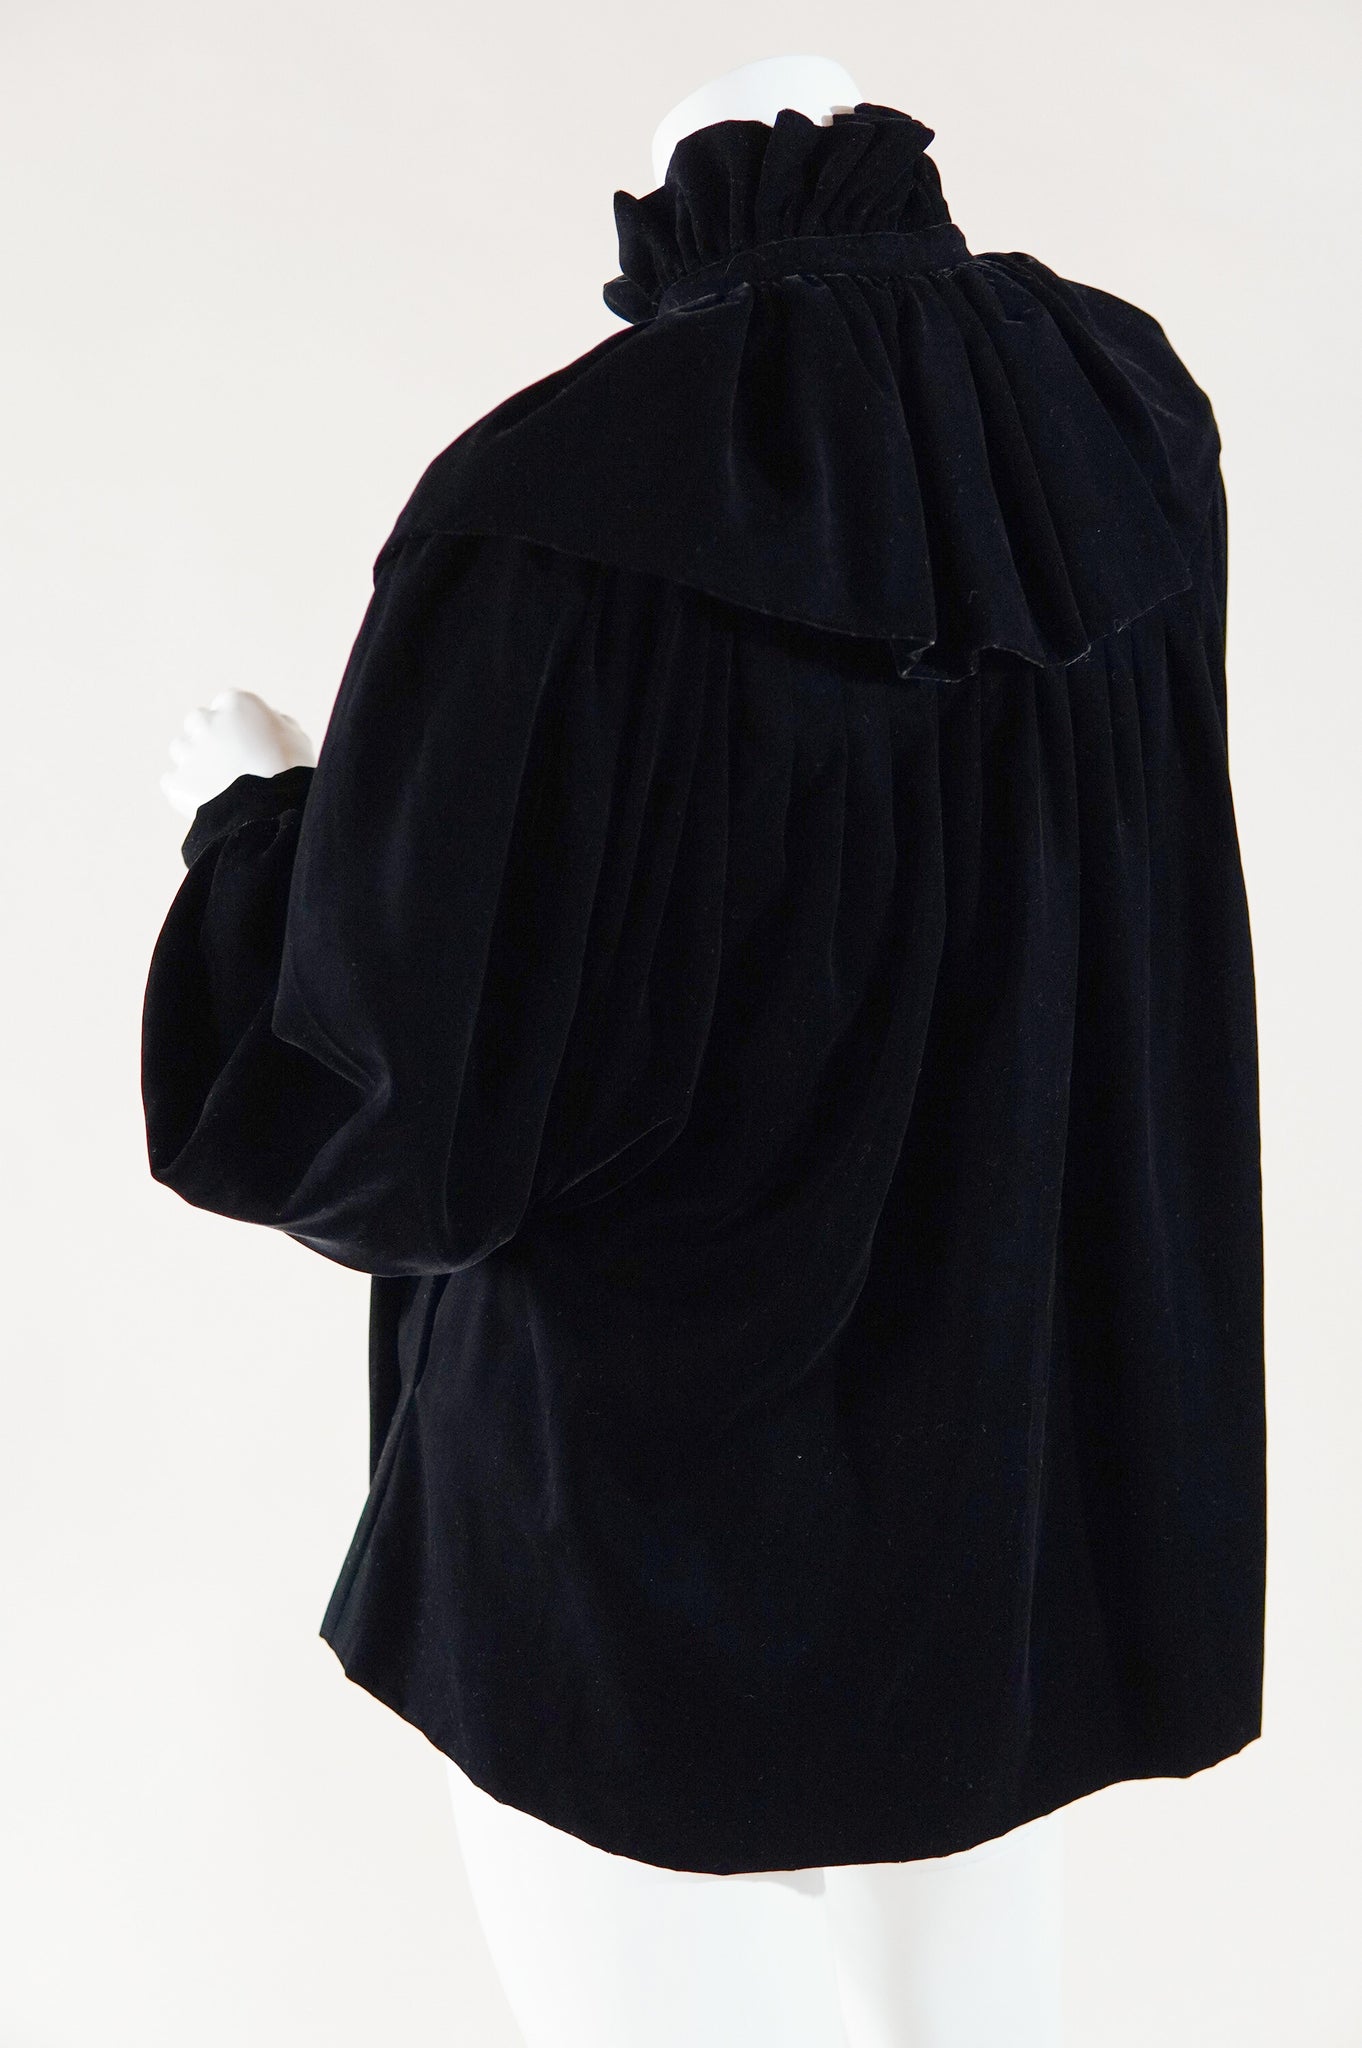 RESERVED S/S 1977 documented Yves Saint Laurent Rive Gauche velvet jacket - XS/S